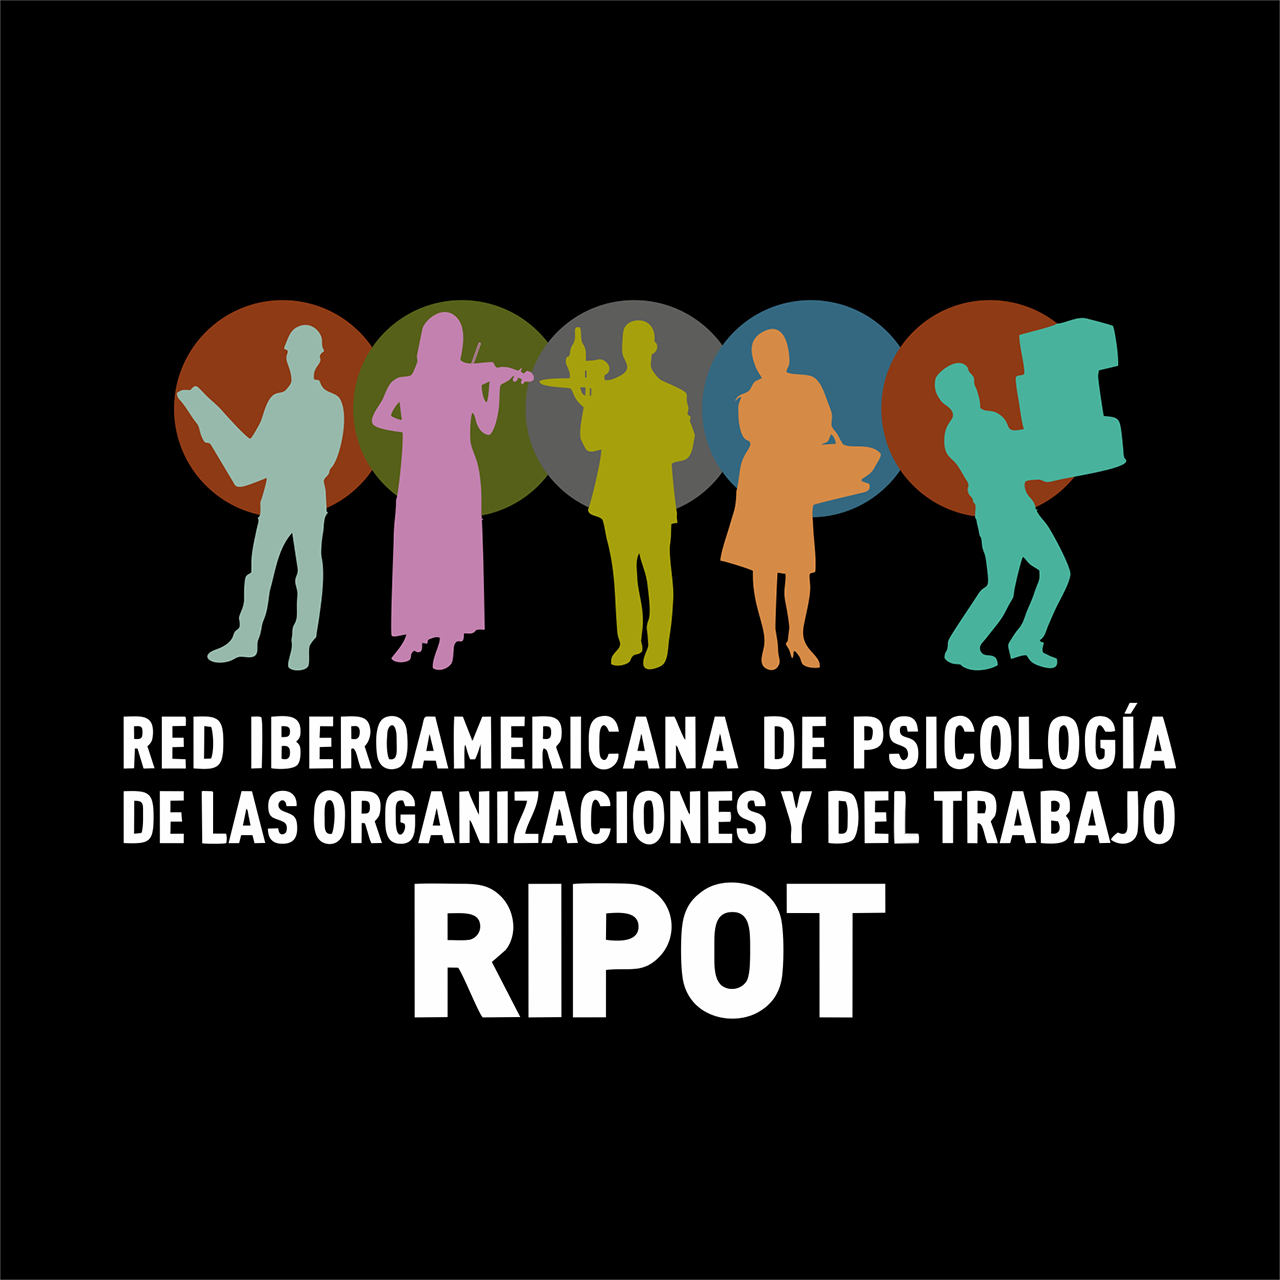 Red Iberoamericana de Psicología de las Organizaciones y del Trabajo (RIPOT)